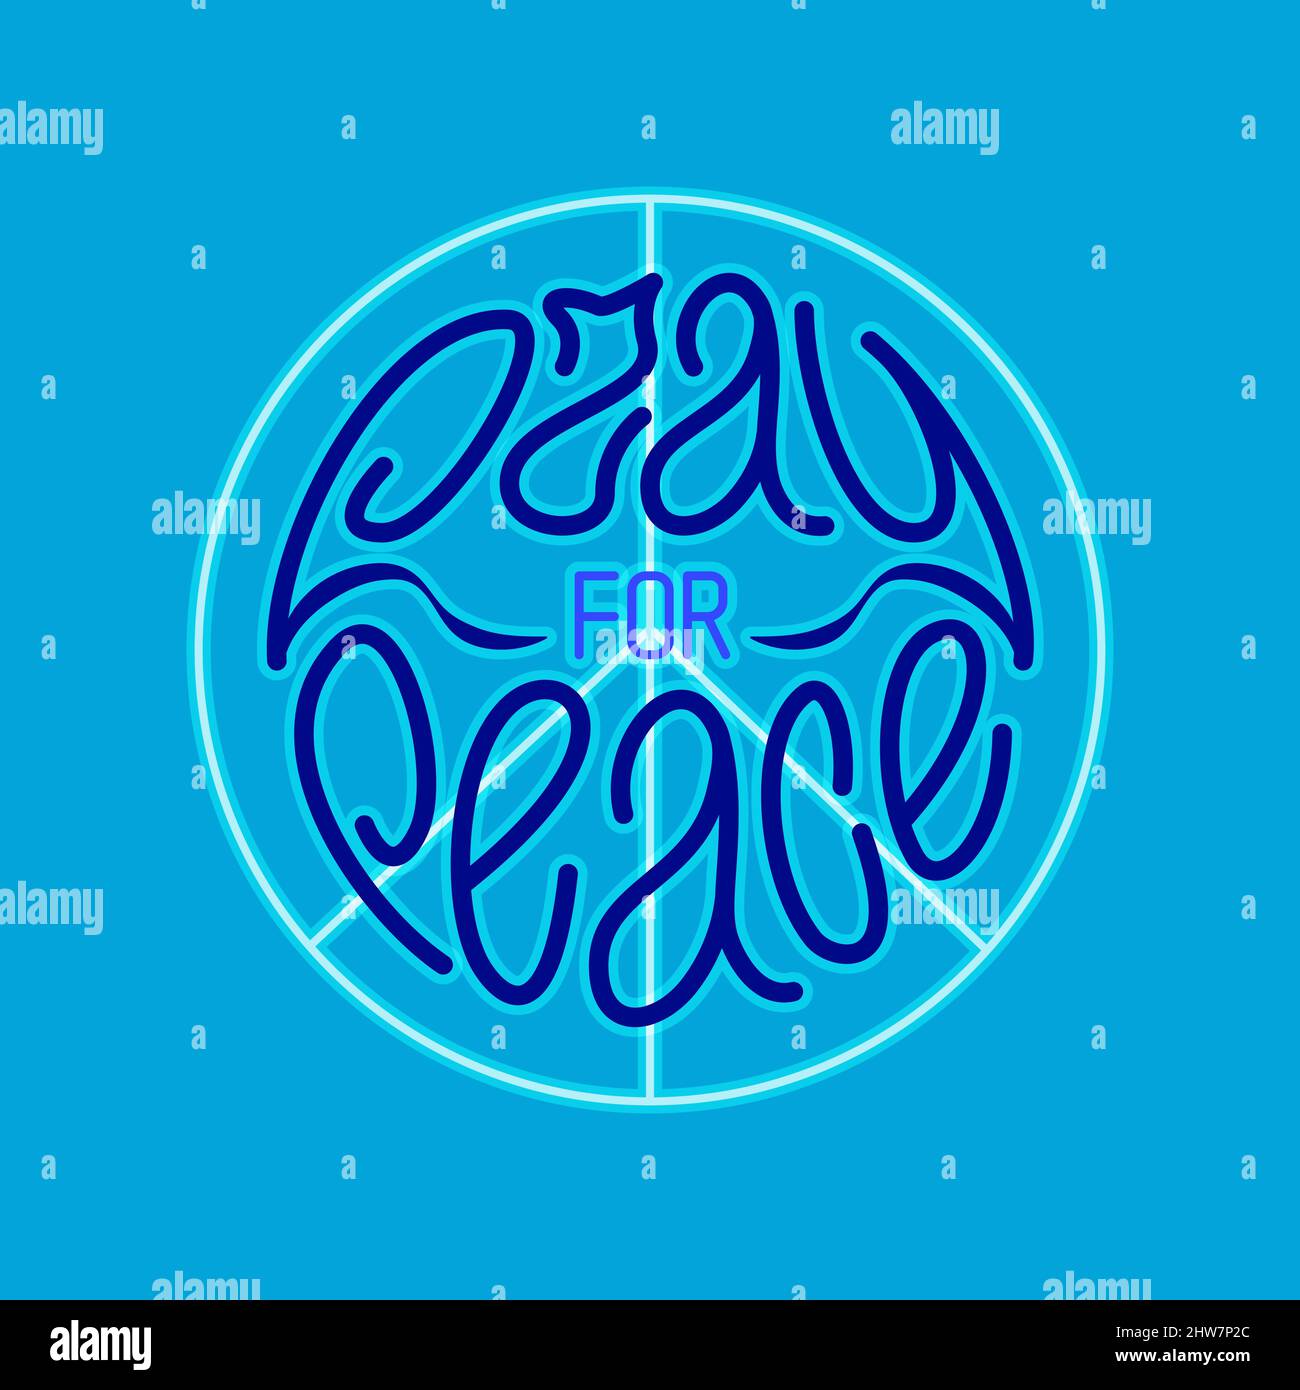 Betet für den Frieden. Handgezeichneter Schriftzug mit Friedenssymbol oder pacific in Blautönen Stock Vektor